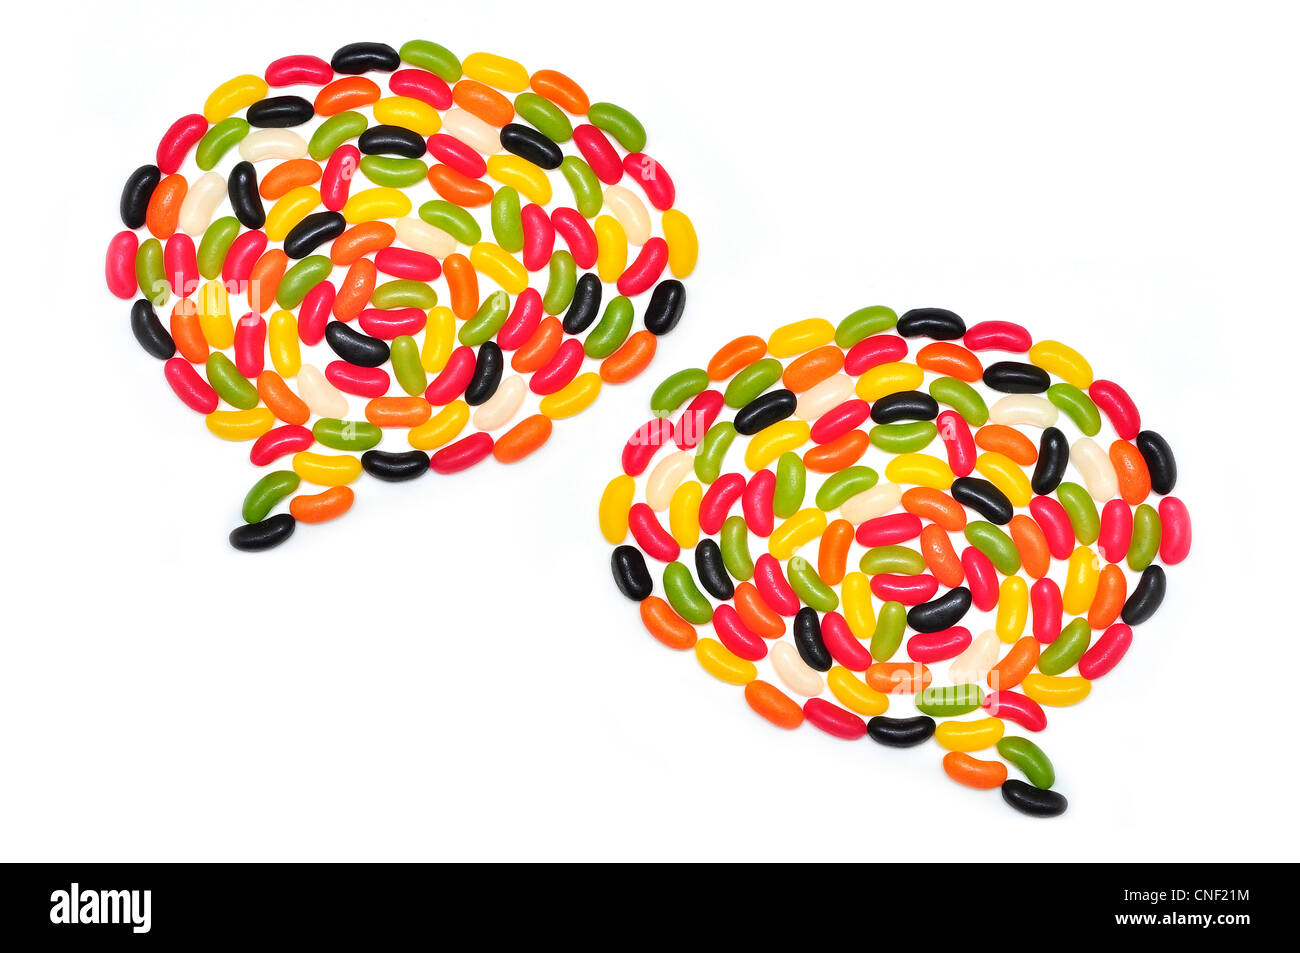 Jelly Beans zwei Sprechblasen Blase sprechen Social Network networking verbinden Beziehungen sprechen sprechen Farbe einfarbig Stockfoto